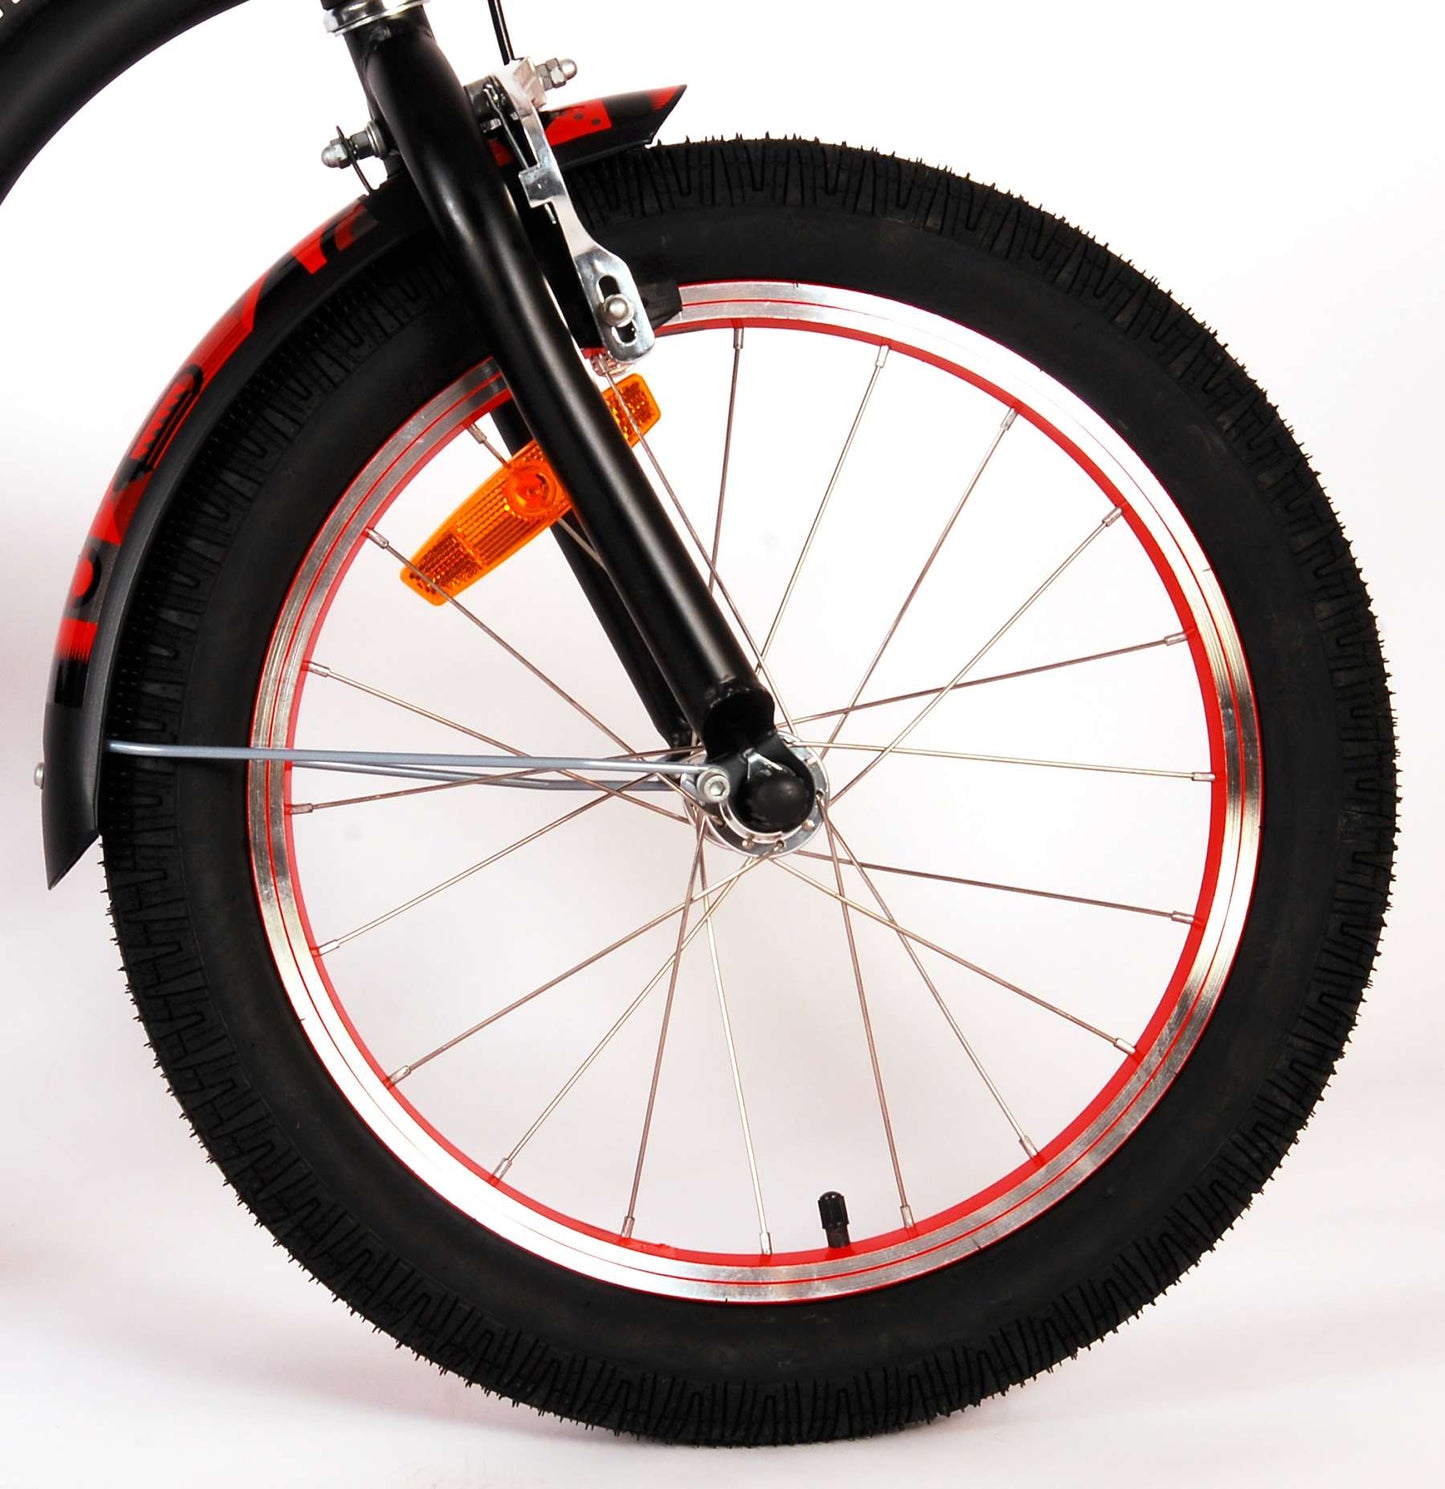 Bicycle per bambini di Vlatare Miracle Cruiser - Boys - 18 pollici - Matt Black - Collezione Prime